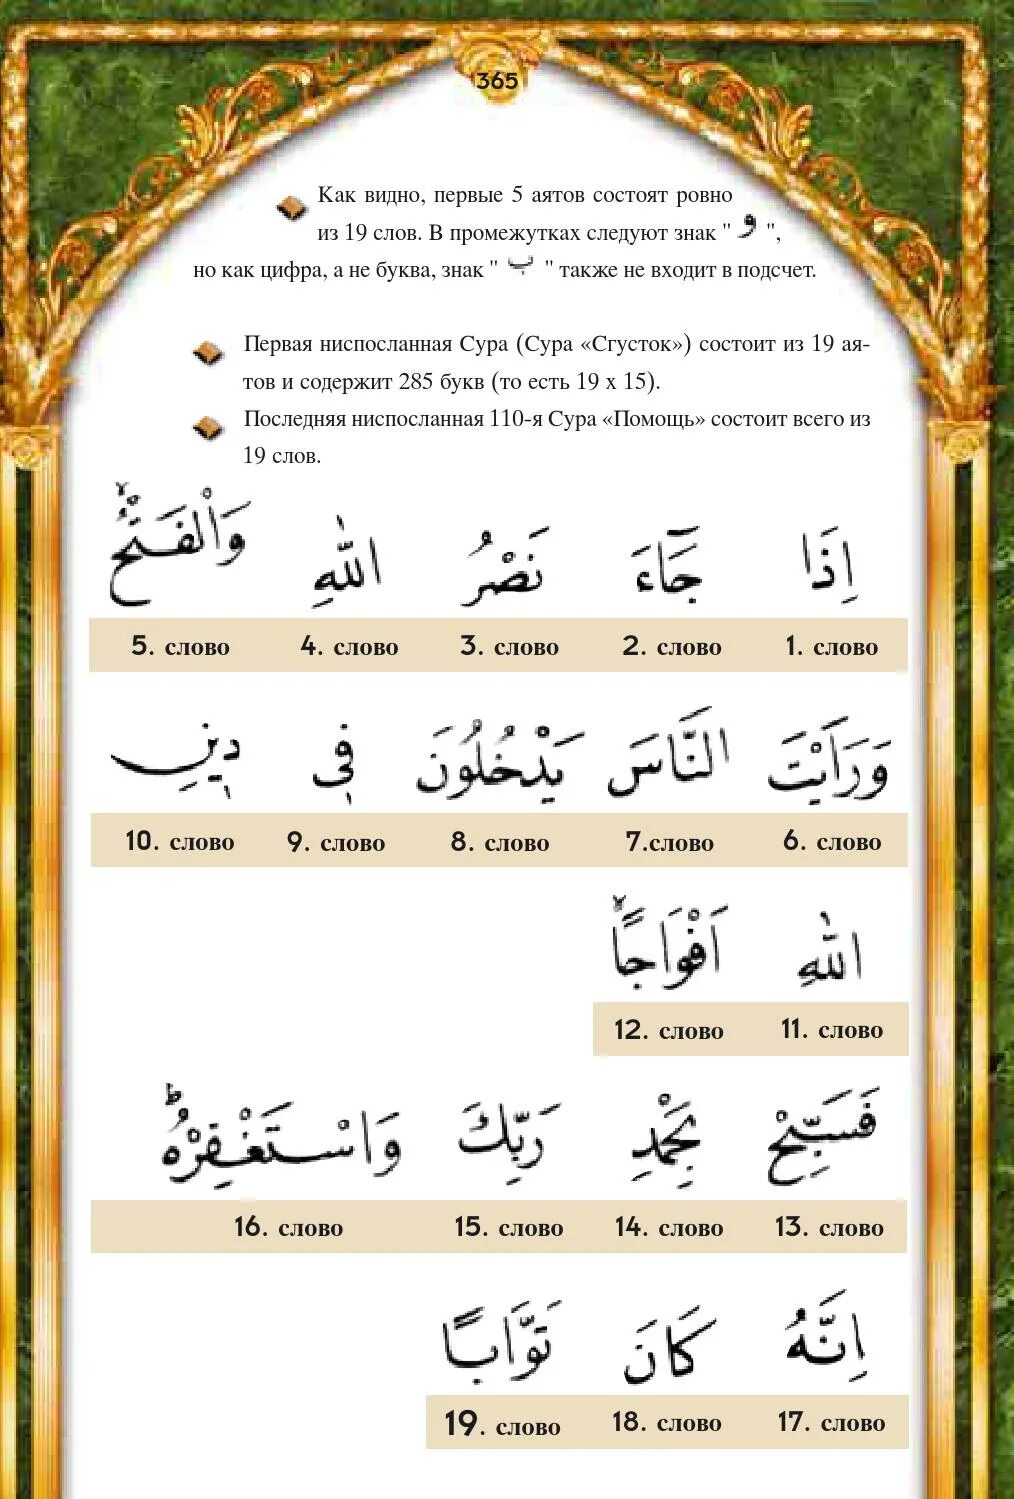 Первая ниспосланная Сура Корана. Первый ниспосланный аят. Первый аят Корана ниспосланный. Первые аяты ниспосланные Пророку.